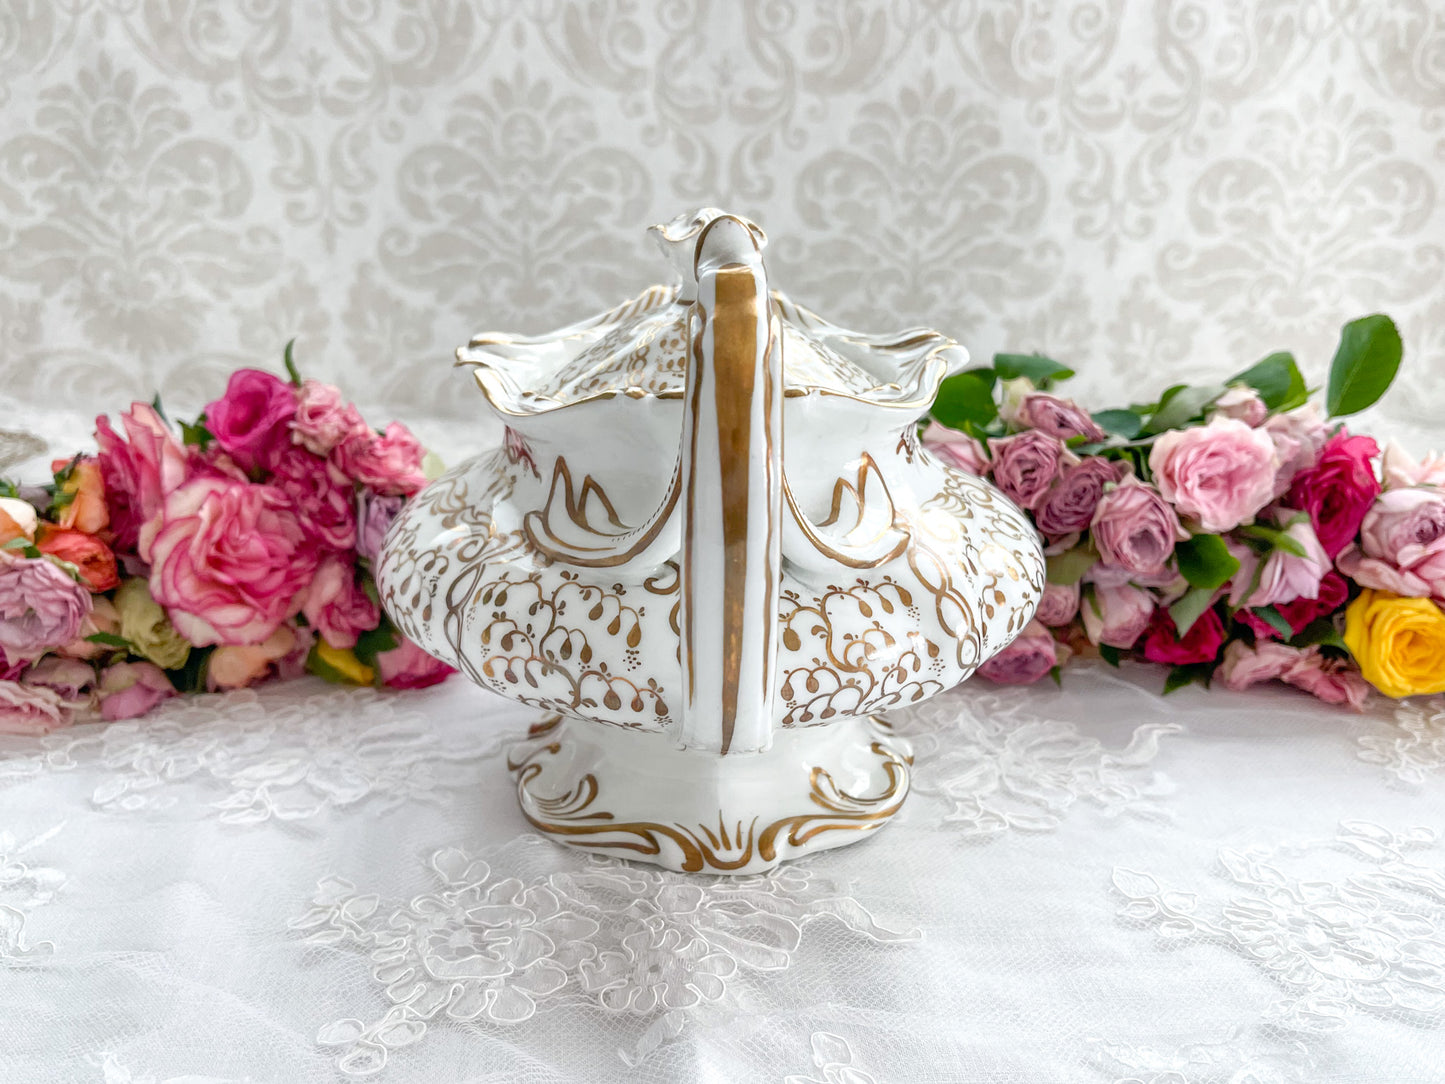 ロココリバイバルの優雅なティーポット。白磁に金彩の細かな模様が美しいです。Rose Antiquesはコールポートをはじめ英国アンティーク磁器をご紹介しています。